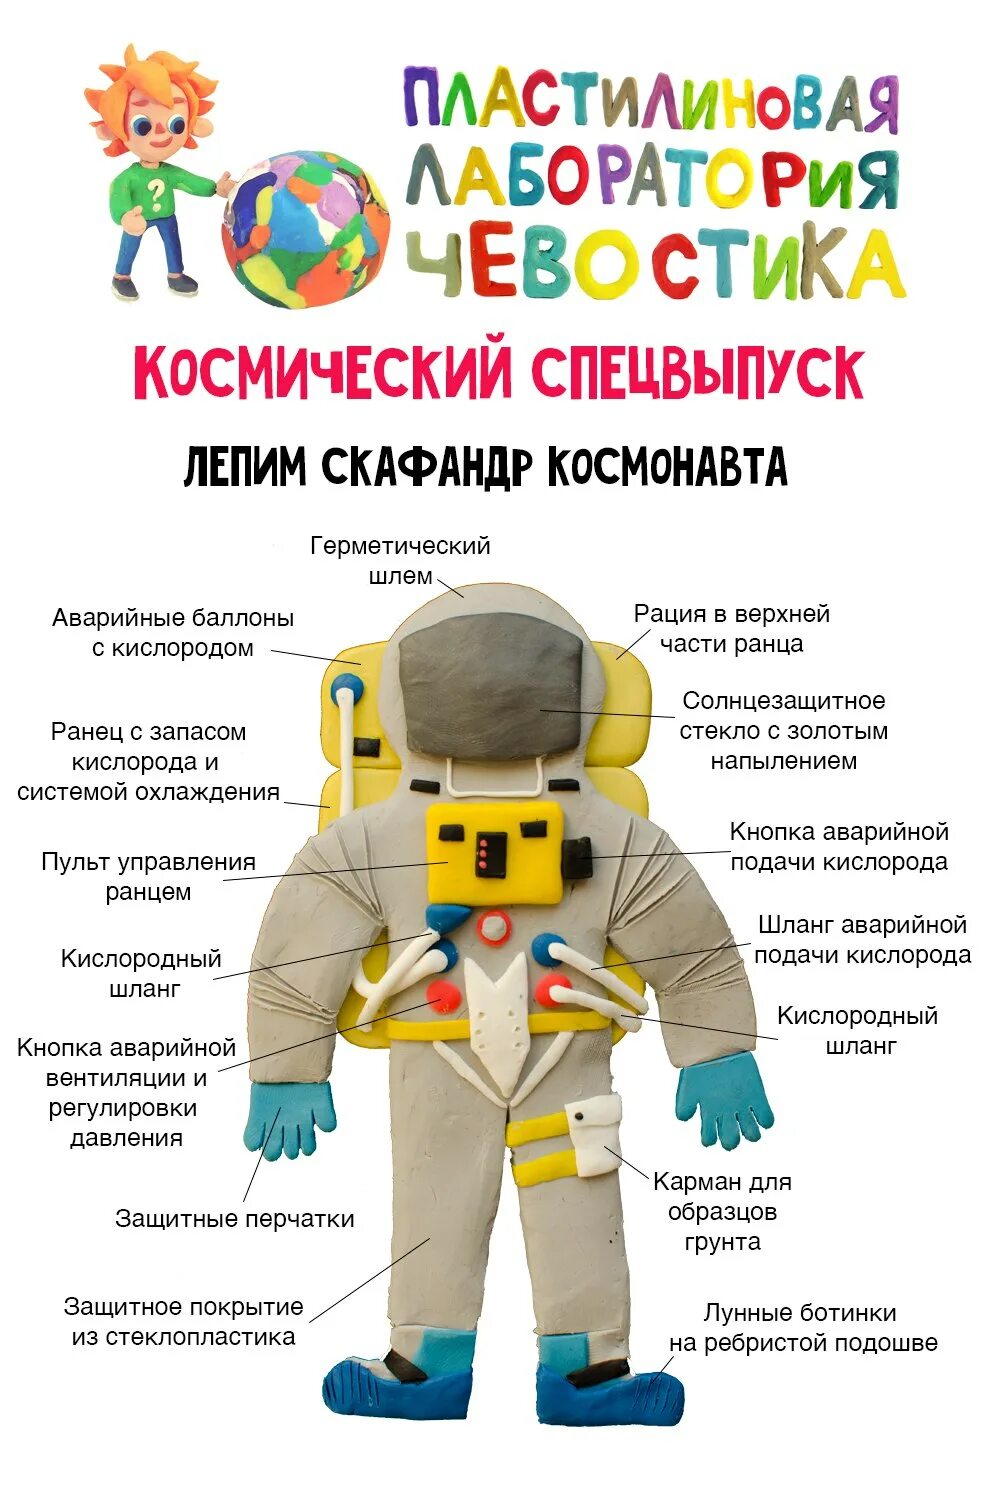 Скафандр для дошкольников. Скафандр Космонавта. Одежда Космонавта для детей. Части скафандра